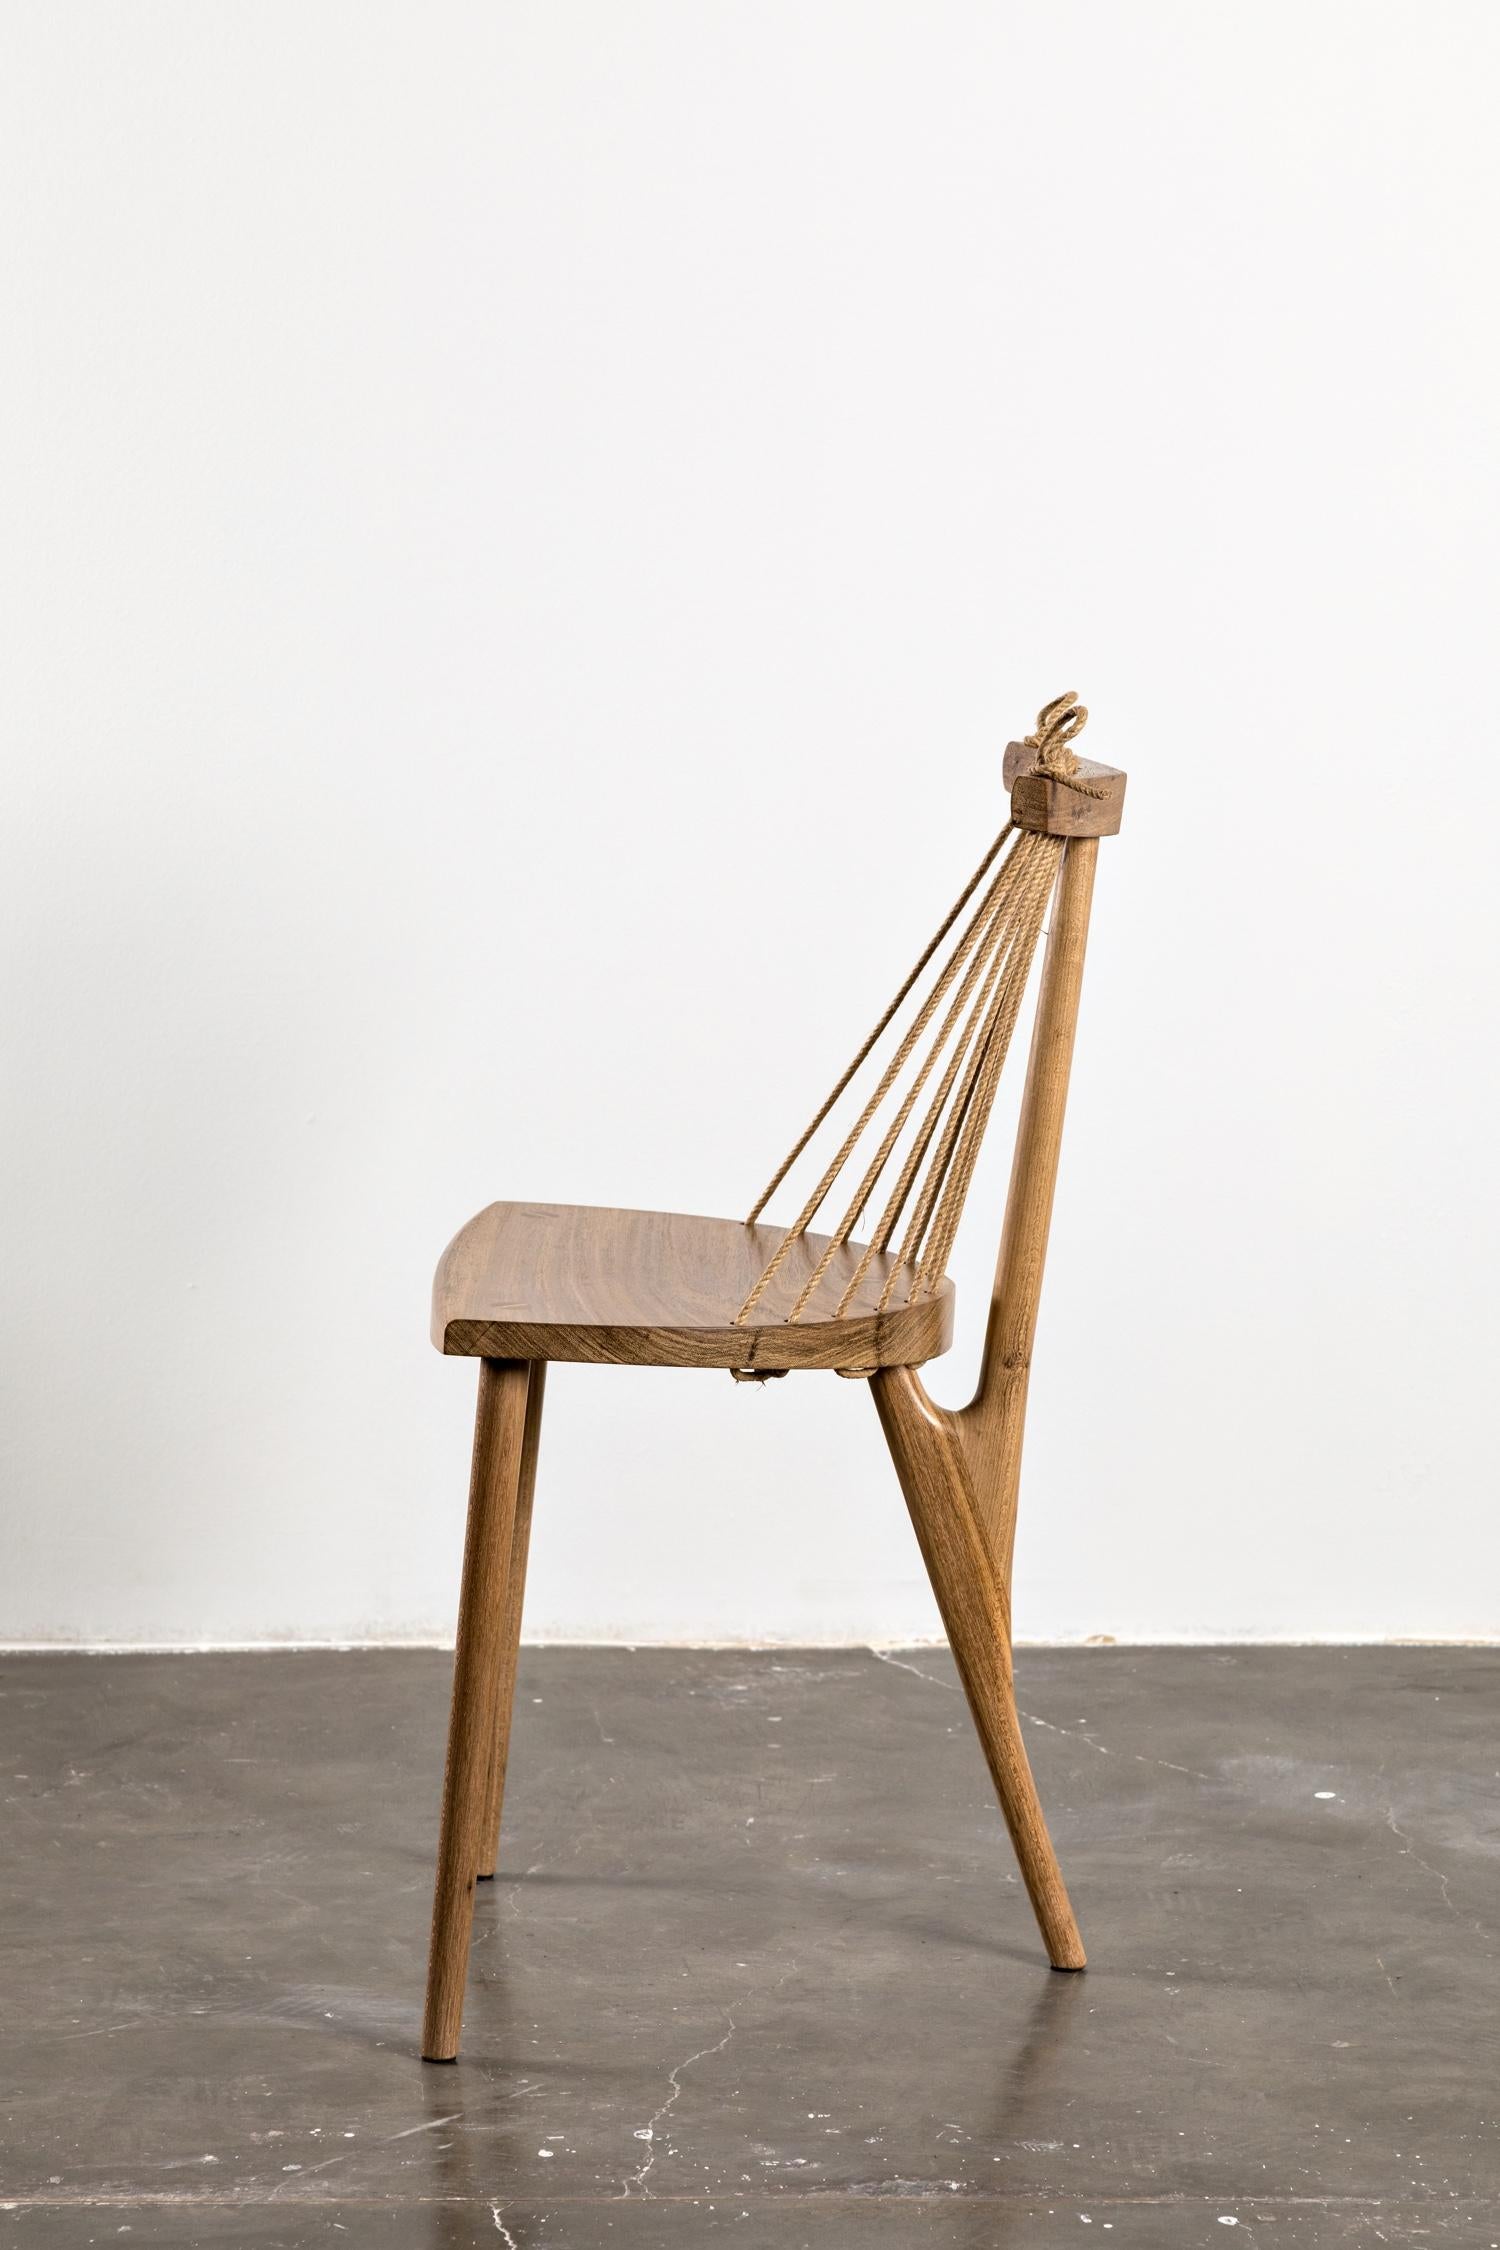 three-legged chair